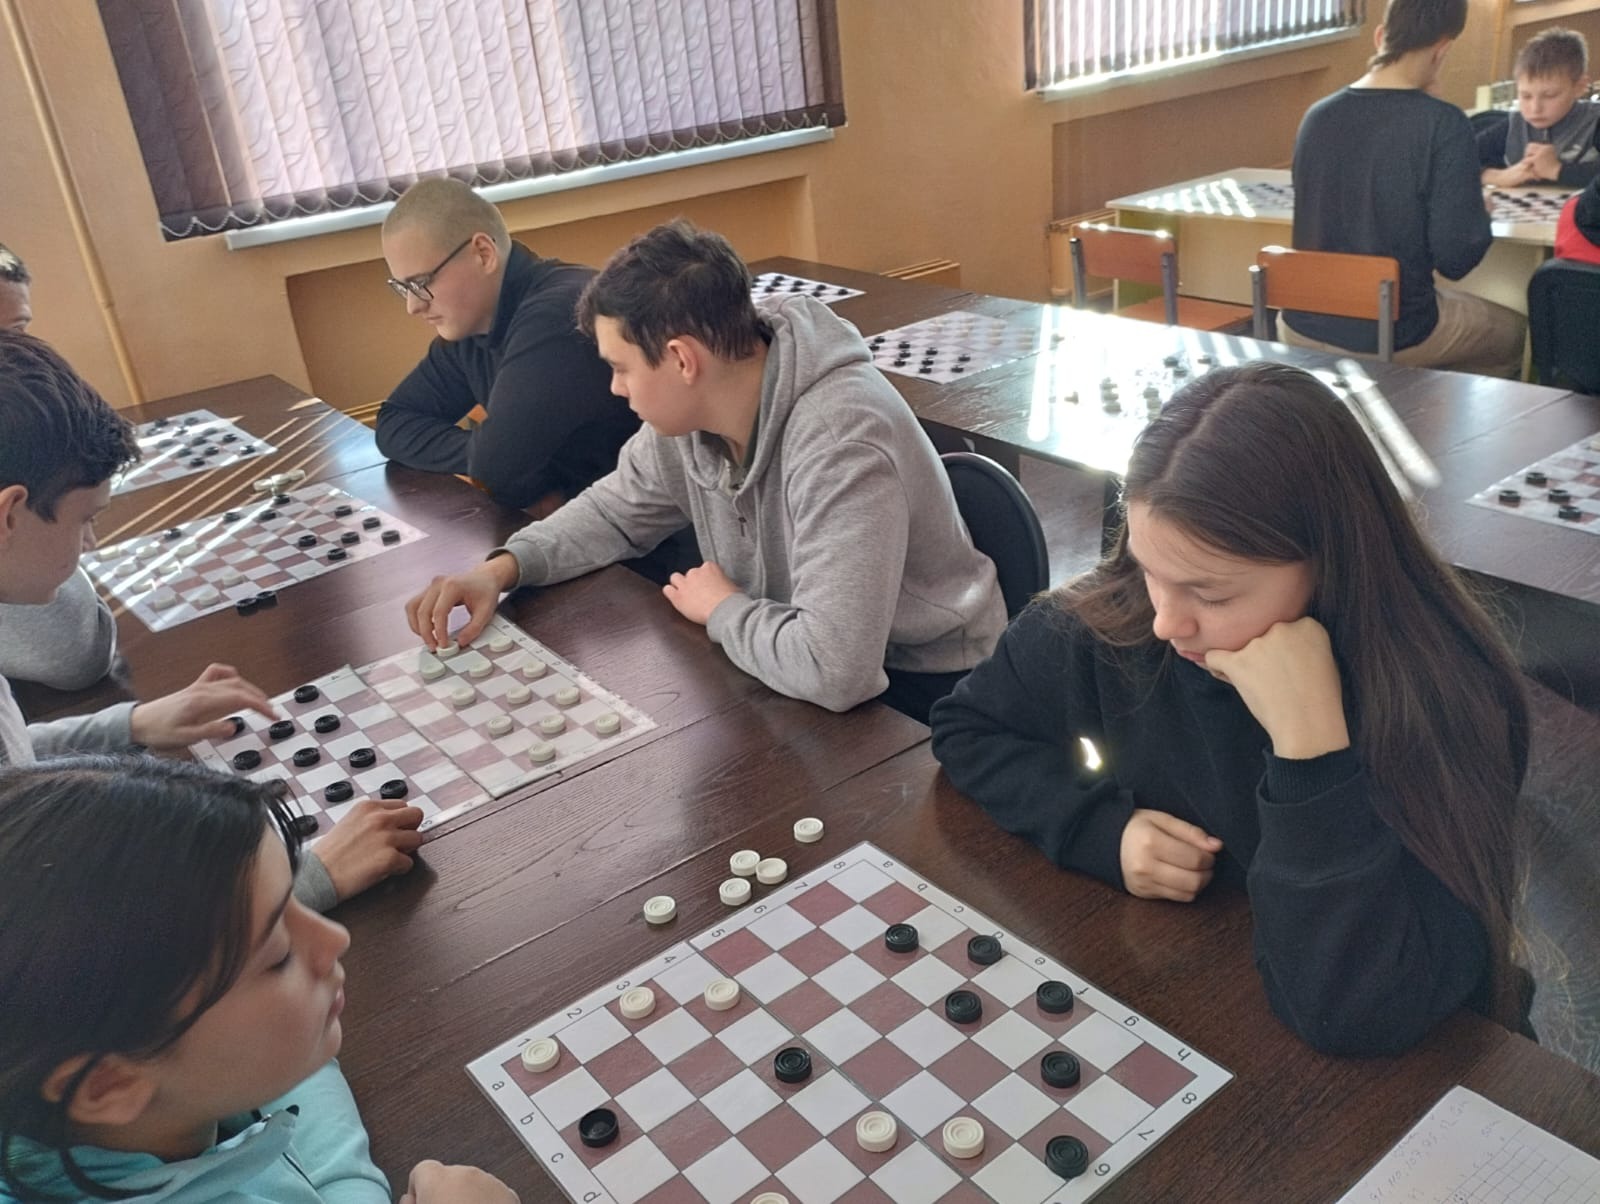 22 февраля на базе МБУ ДО "Вектор" состоялся дивизиональнй этап Всекузбасских спортивных игр младших школьников "Смелость быть первыми" по шахматам.